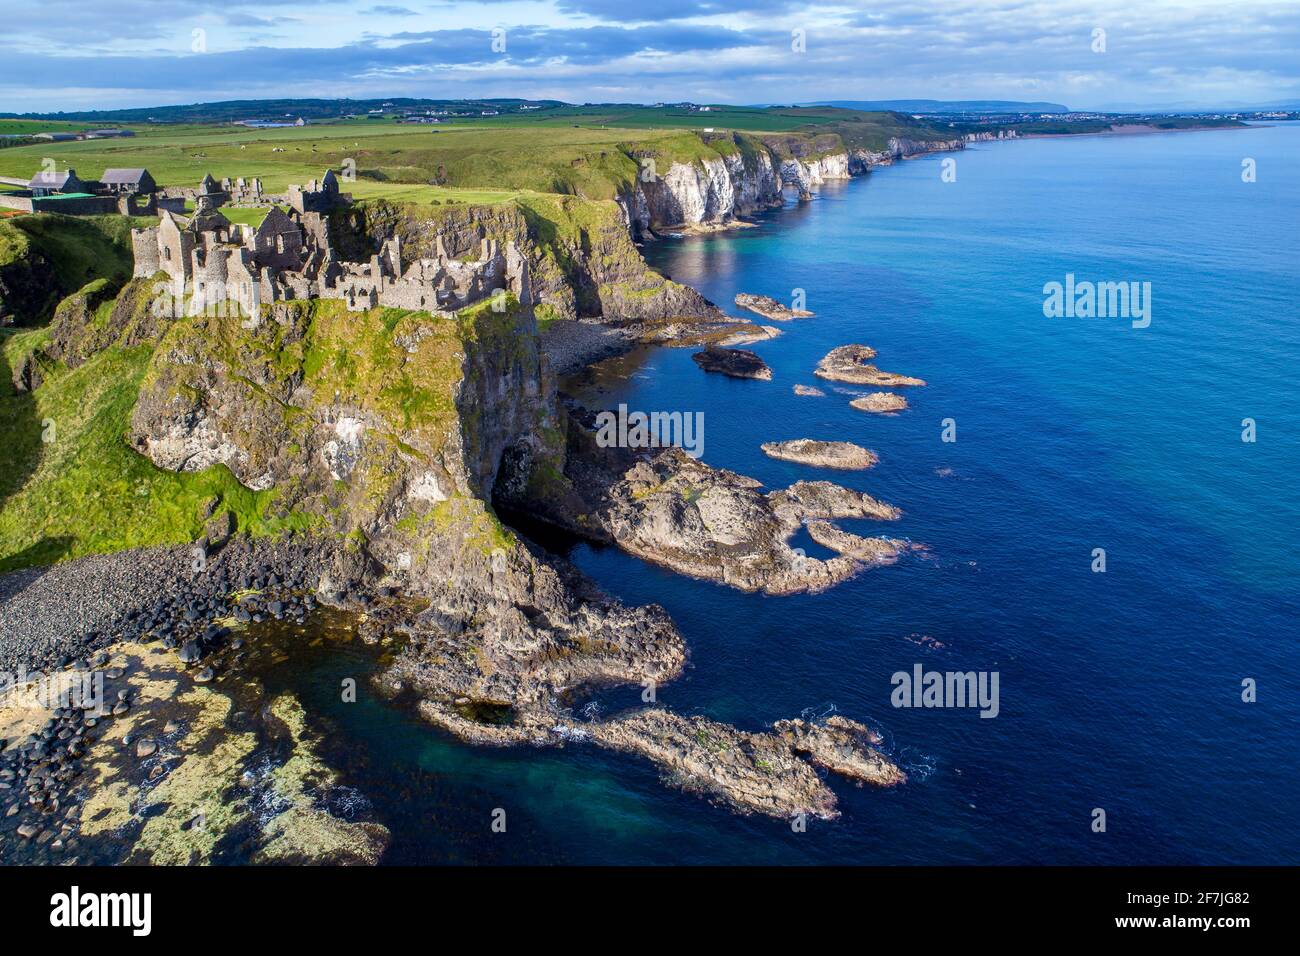 Ruines du château de Dunluce médiévale, les falaises, les baies et péninsules. Côte nord du comté d'Antrim, Irlande du Nord, Royaume-Uni. Vue aérienne. Banque D'Images